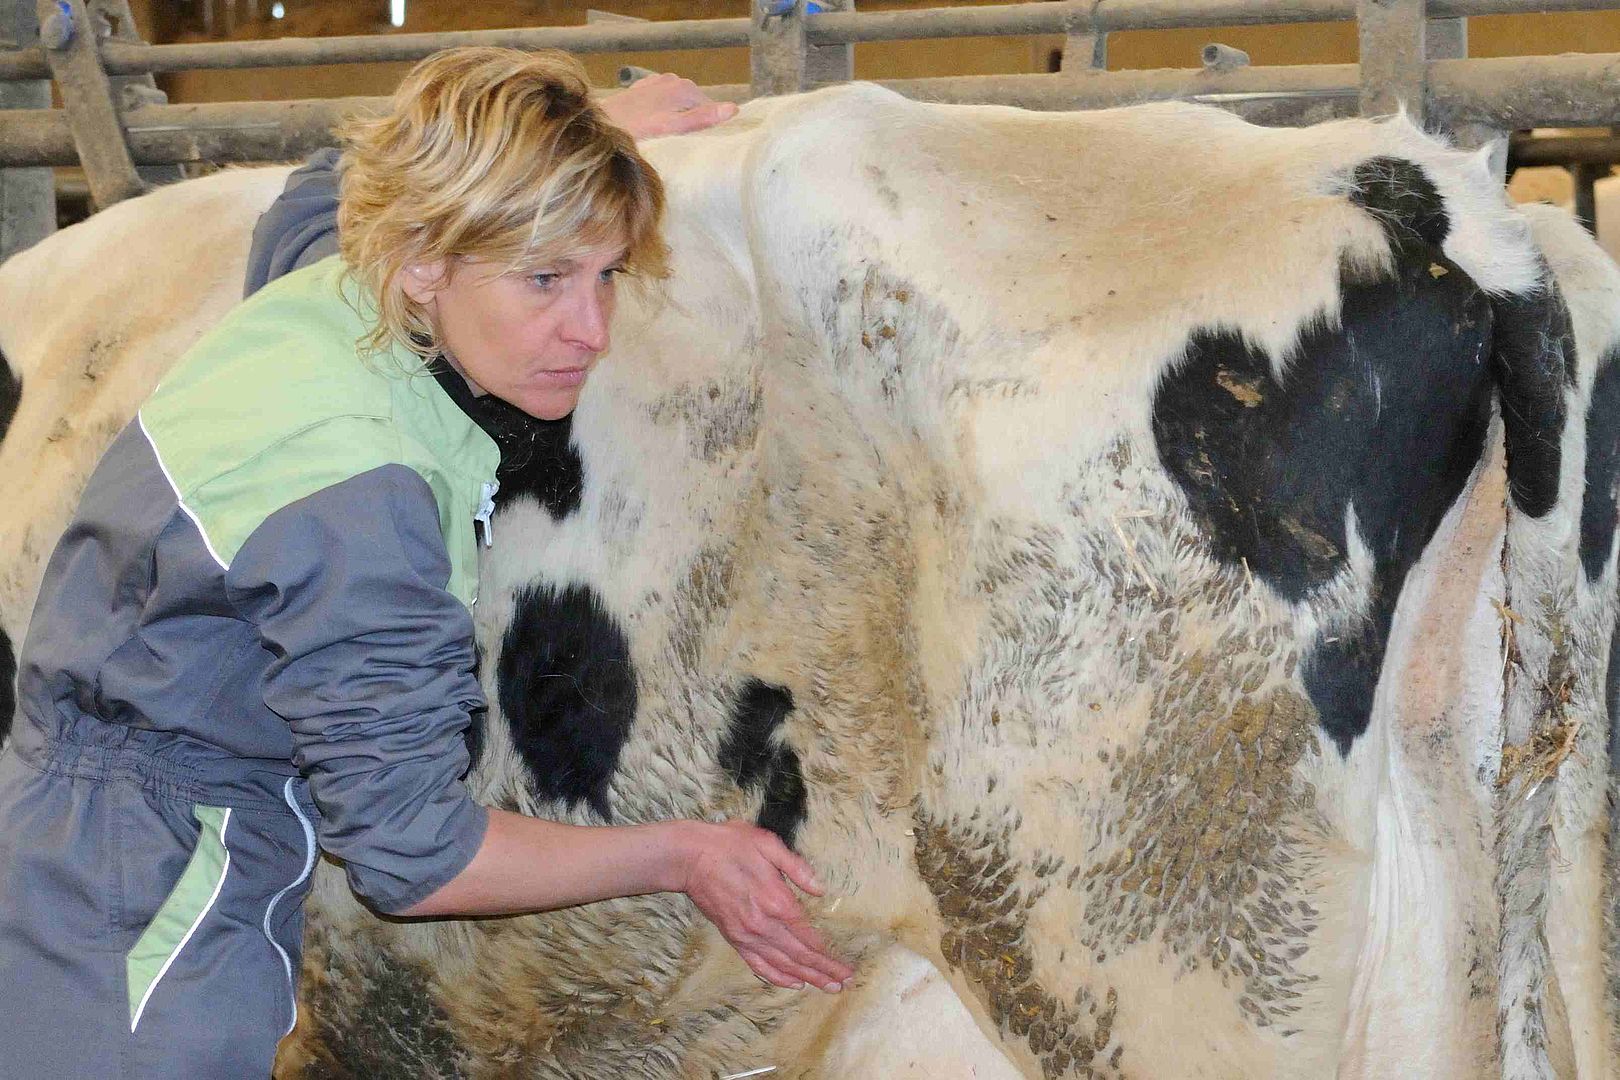 La triste hitoire vécue de la vache et du veau - Académie de massage &  Orthothérapie